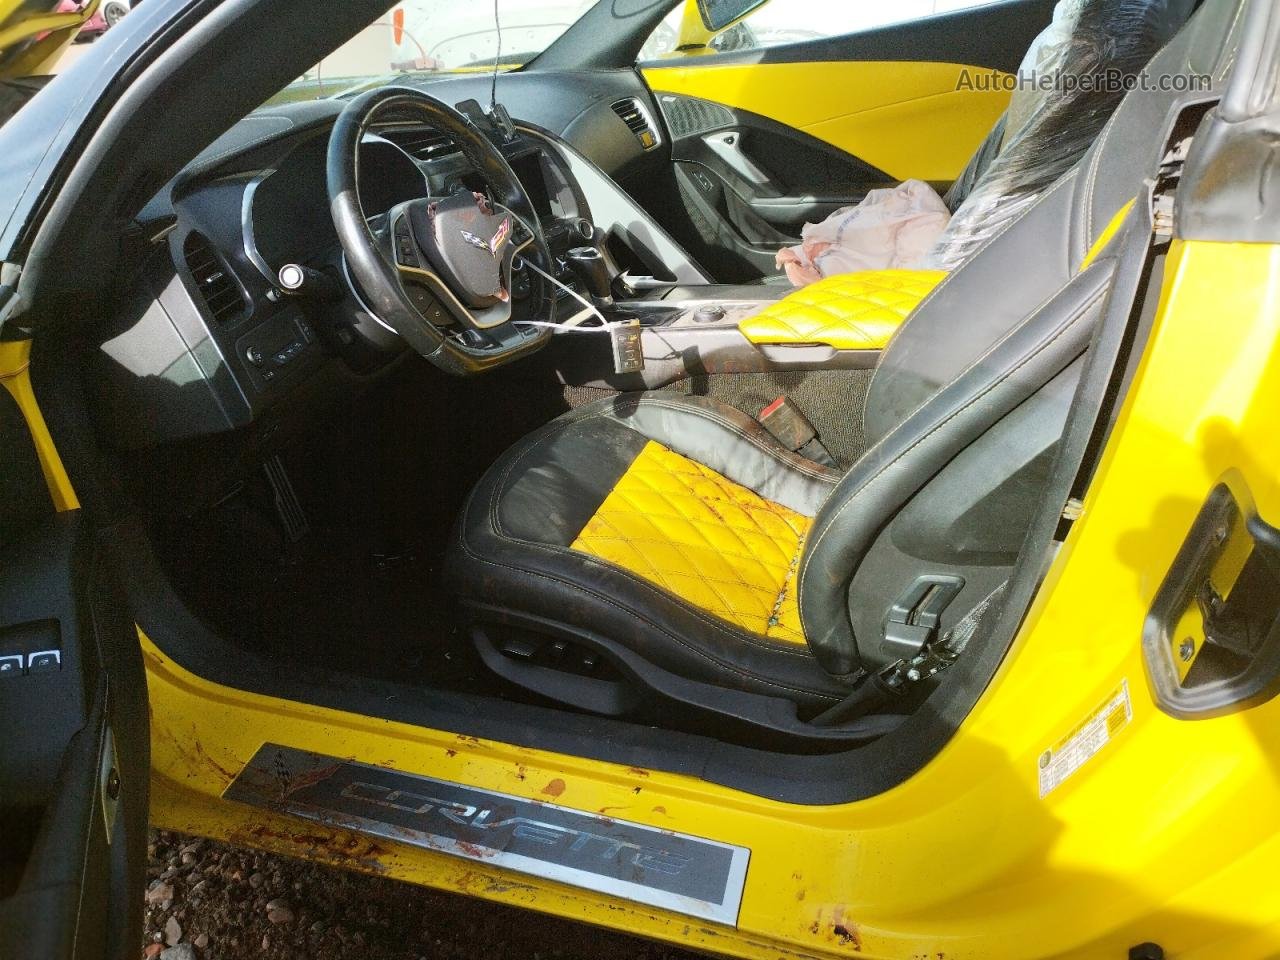 2017 Chevrolet Corvette Stingray 2lt Желтый vin: 1G1YD3D79H5102789